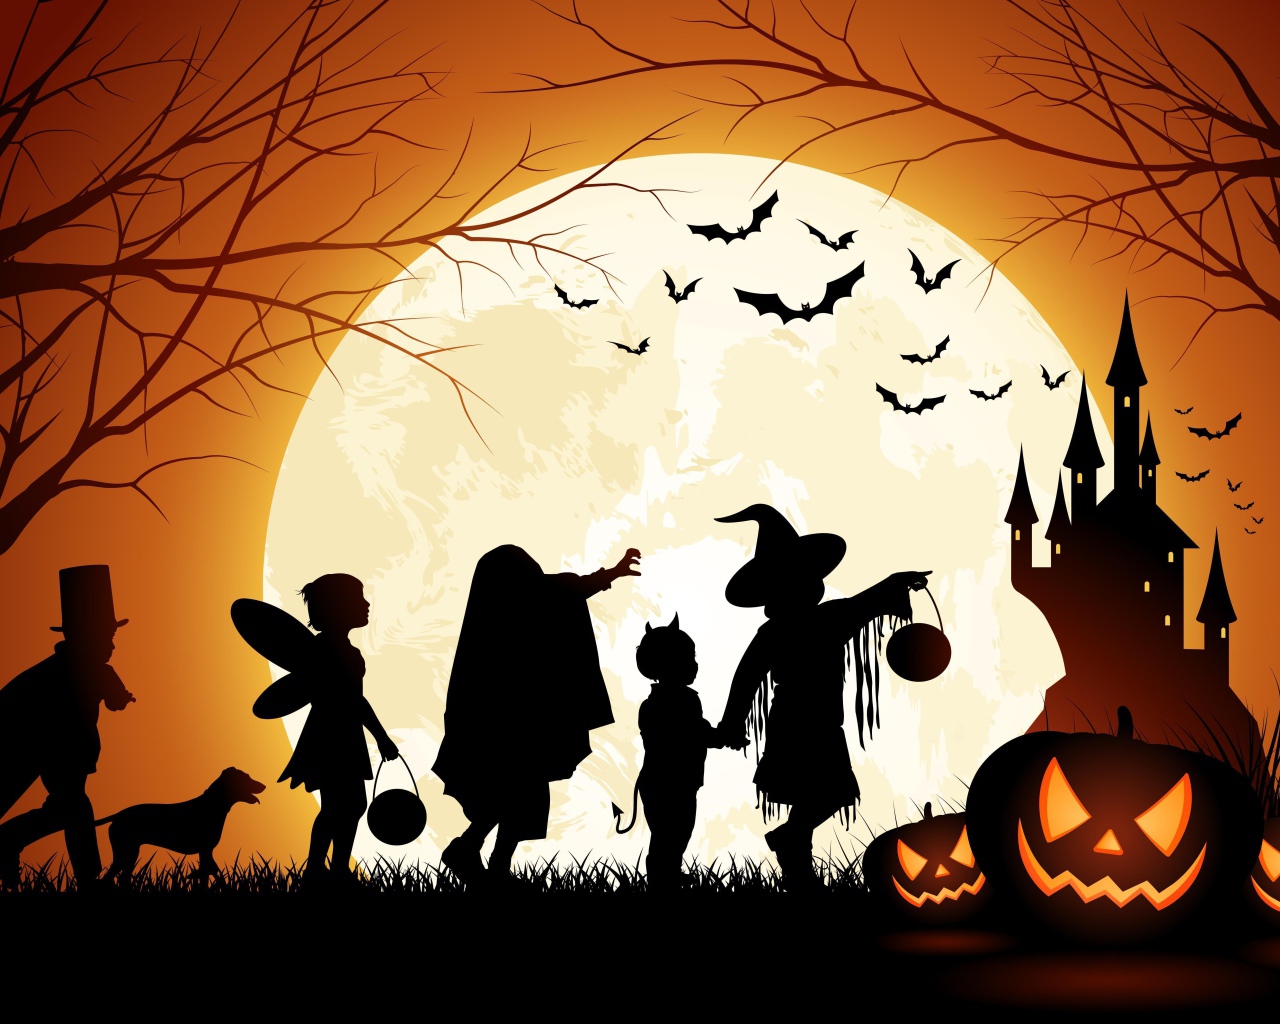 Персонажи праздника хеллоуин